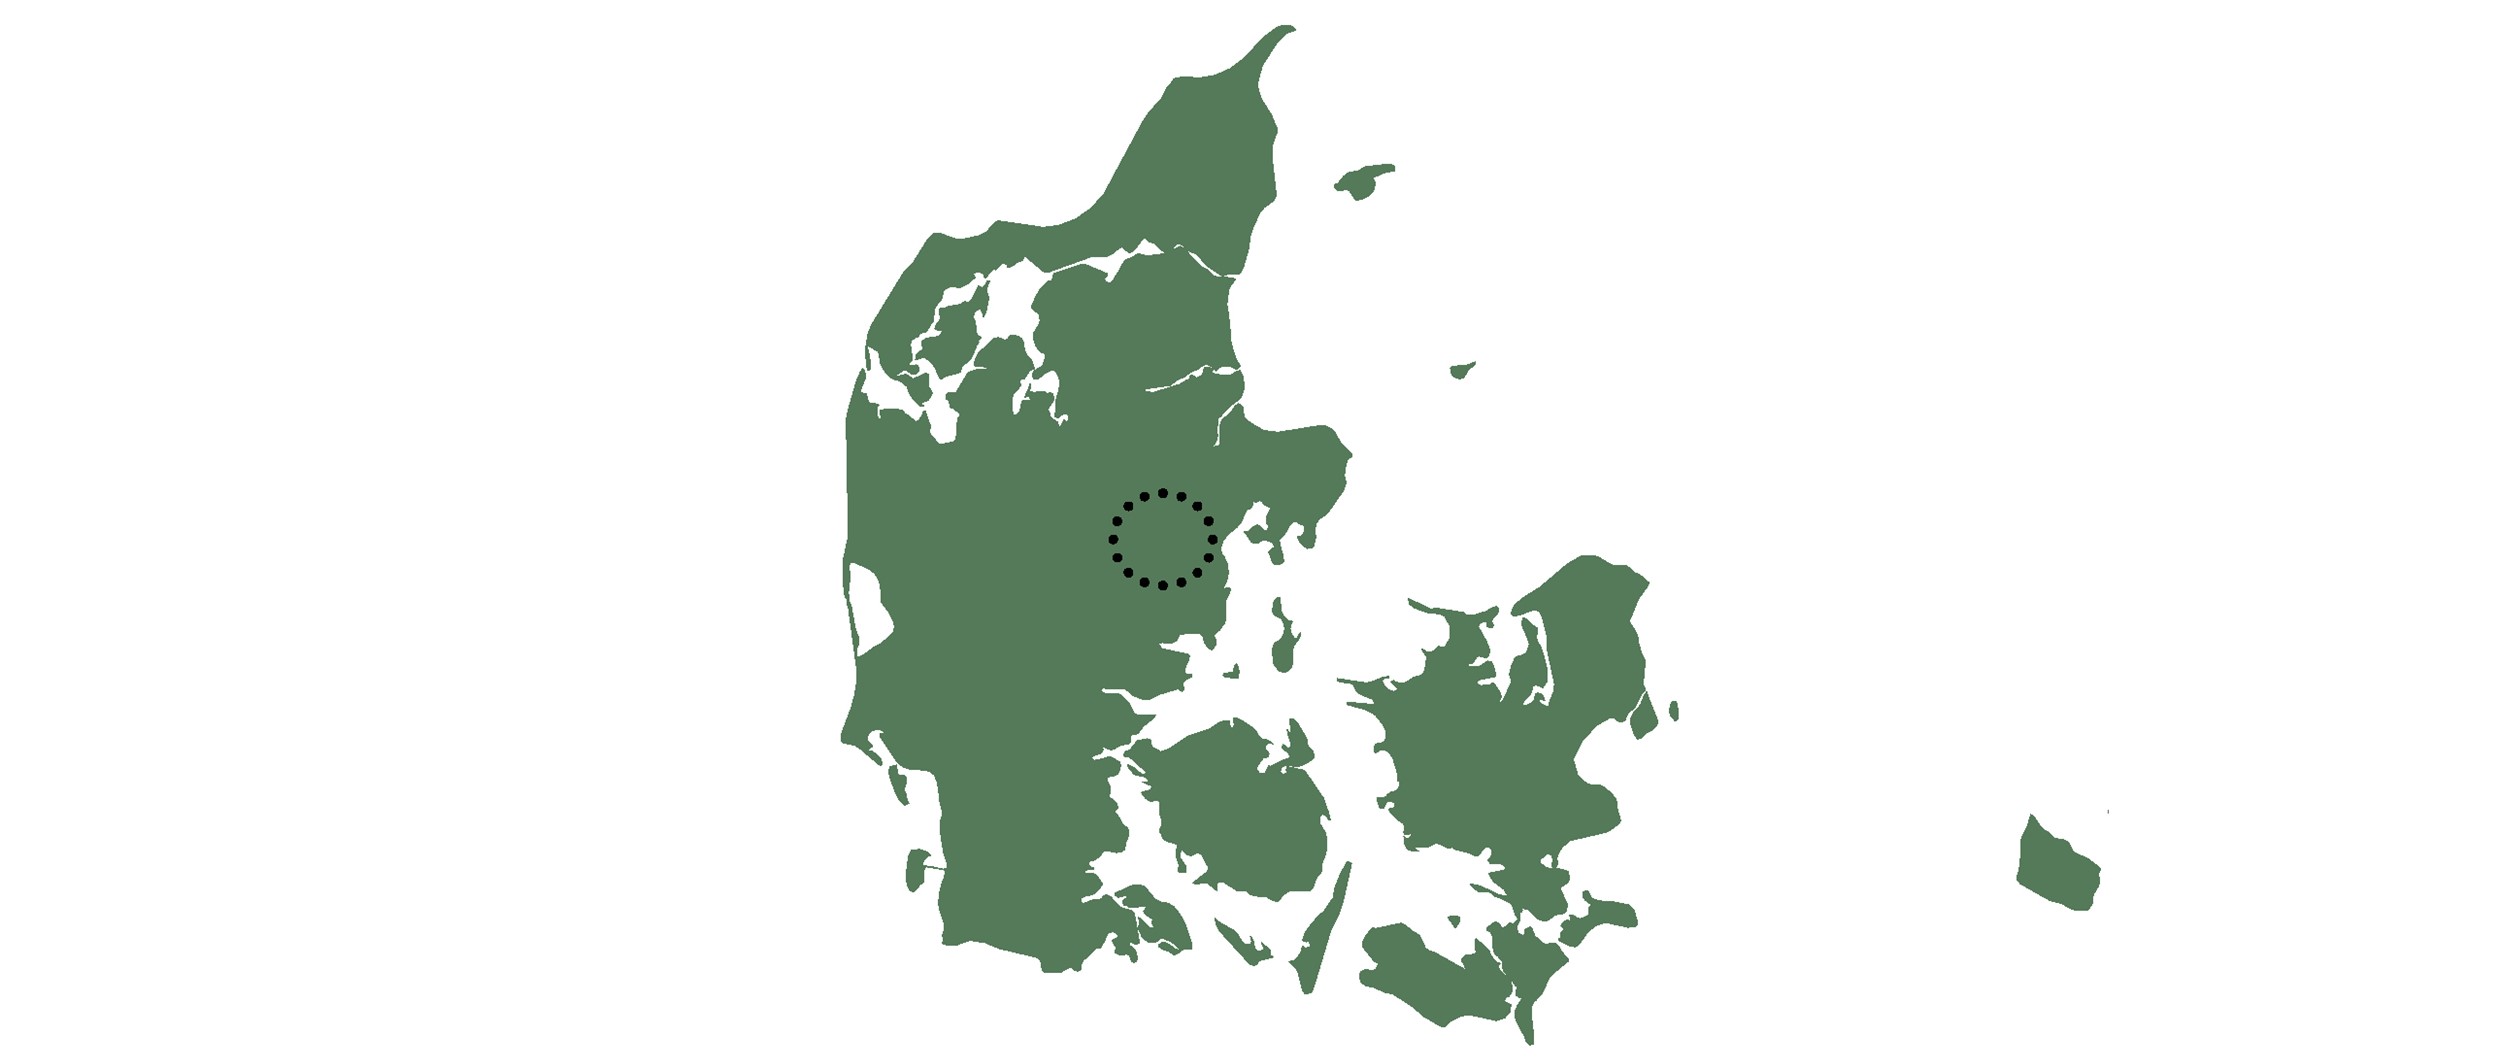 Projektet er beliggende ved Silkeborg i Midtjylland.